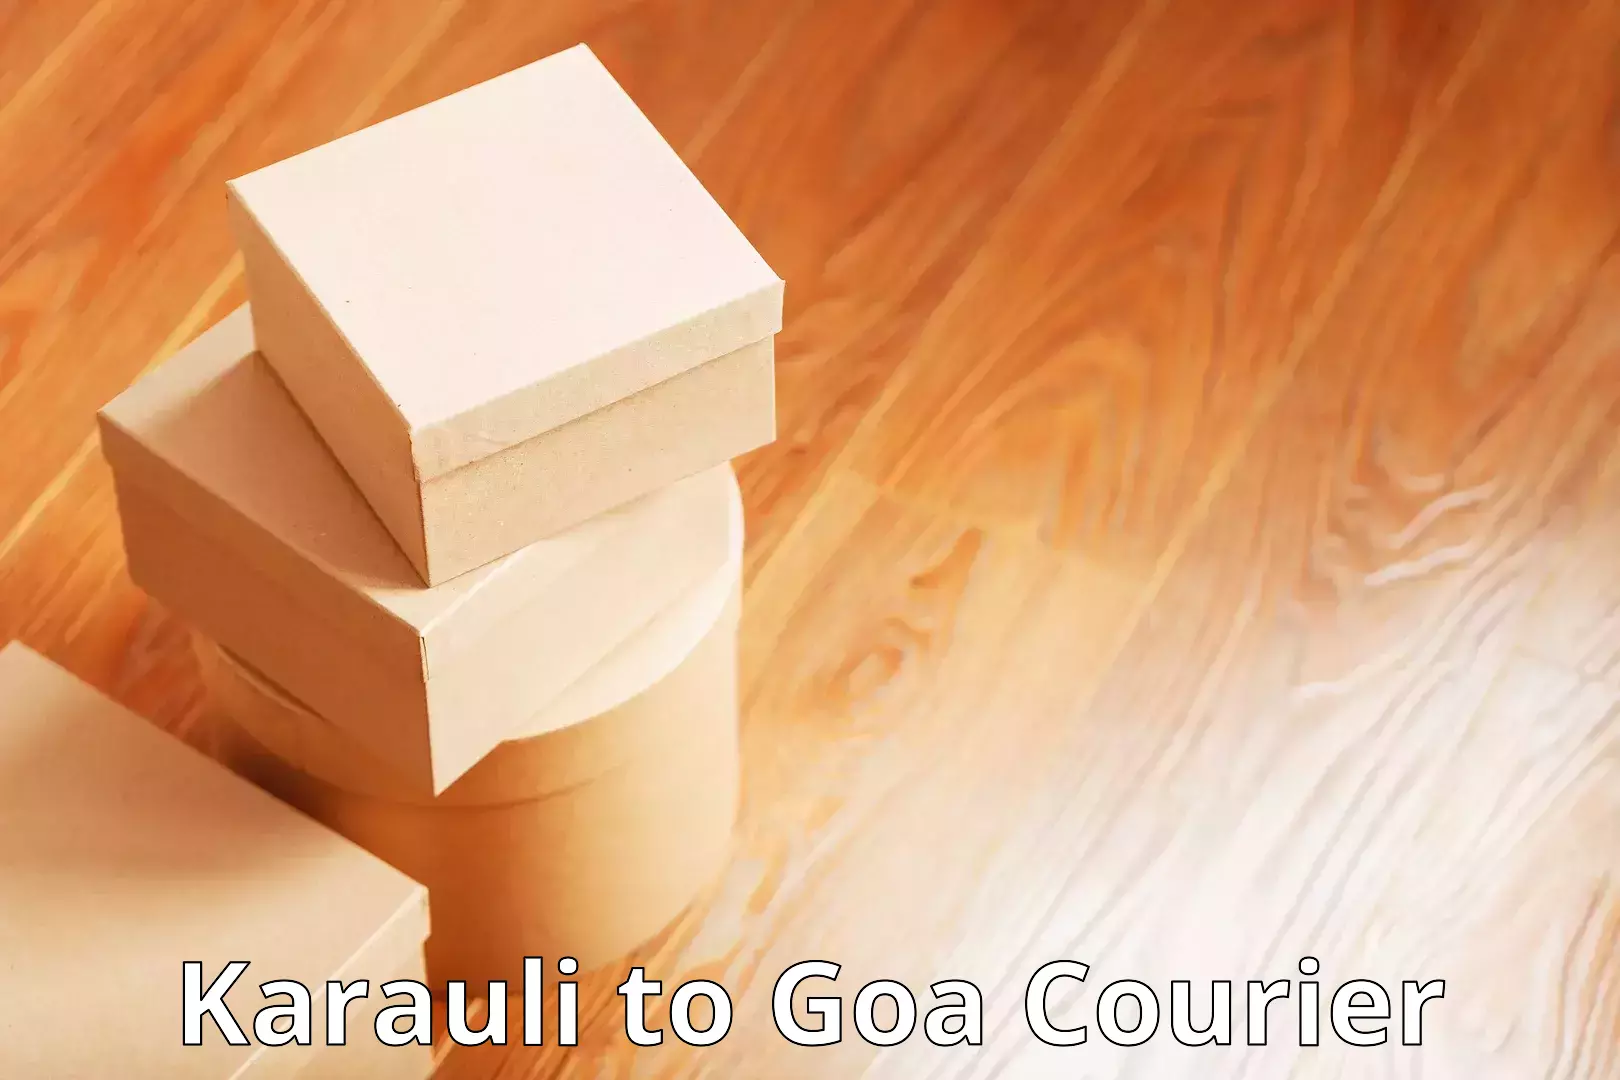 Digital courier platforms Karauli to South Goa